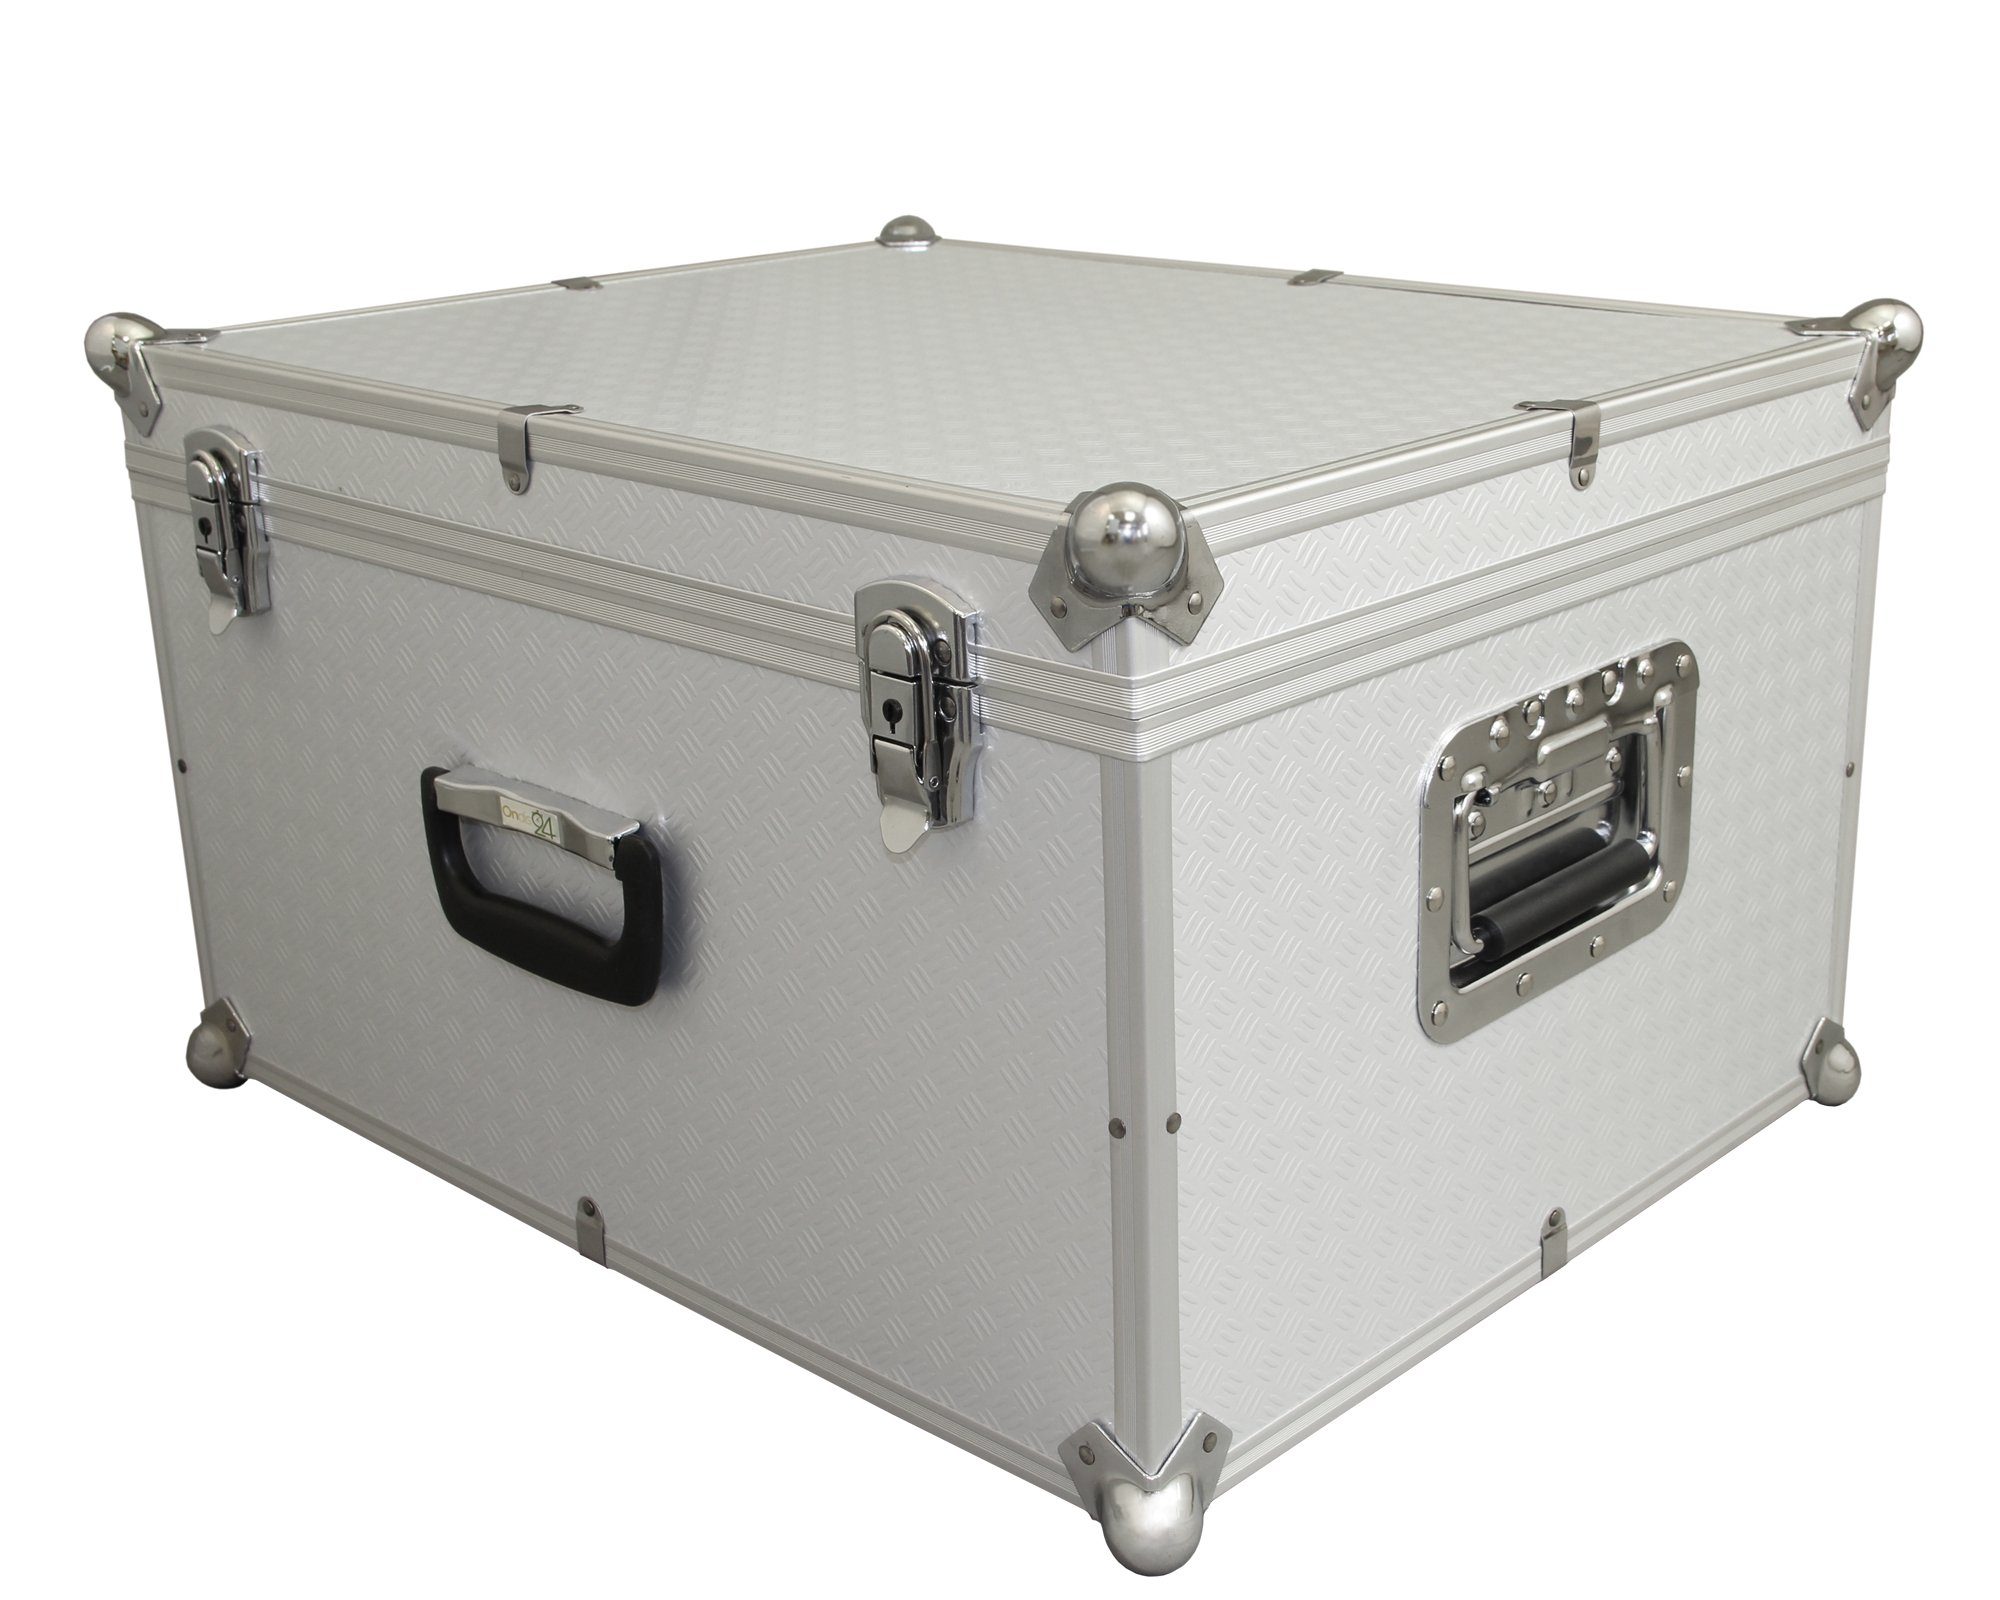 ONDIS24 Koffer Aufbewahrungskoffer Lagerkoffer in Alukoffer - mit Kugelecken aus Alu für extremen Eckschutz Vago silber 60 Liter mit Innenpolsterung für empfindliche Sachen